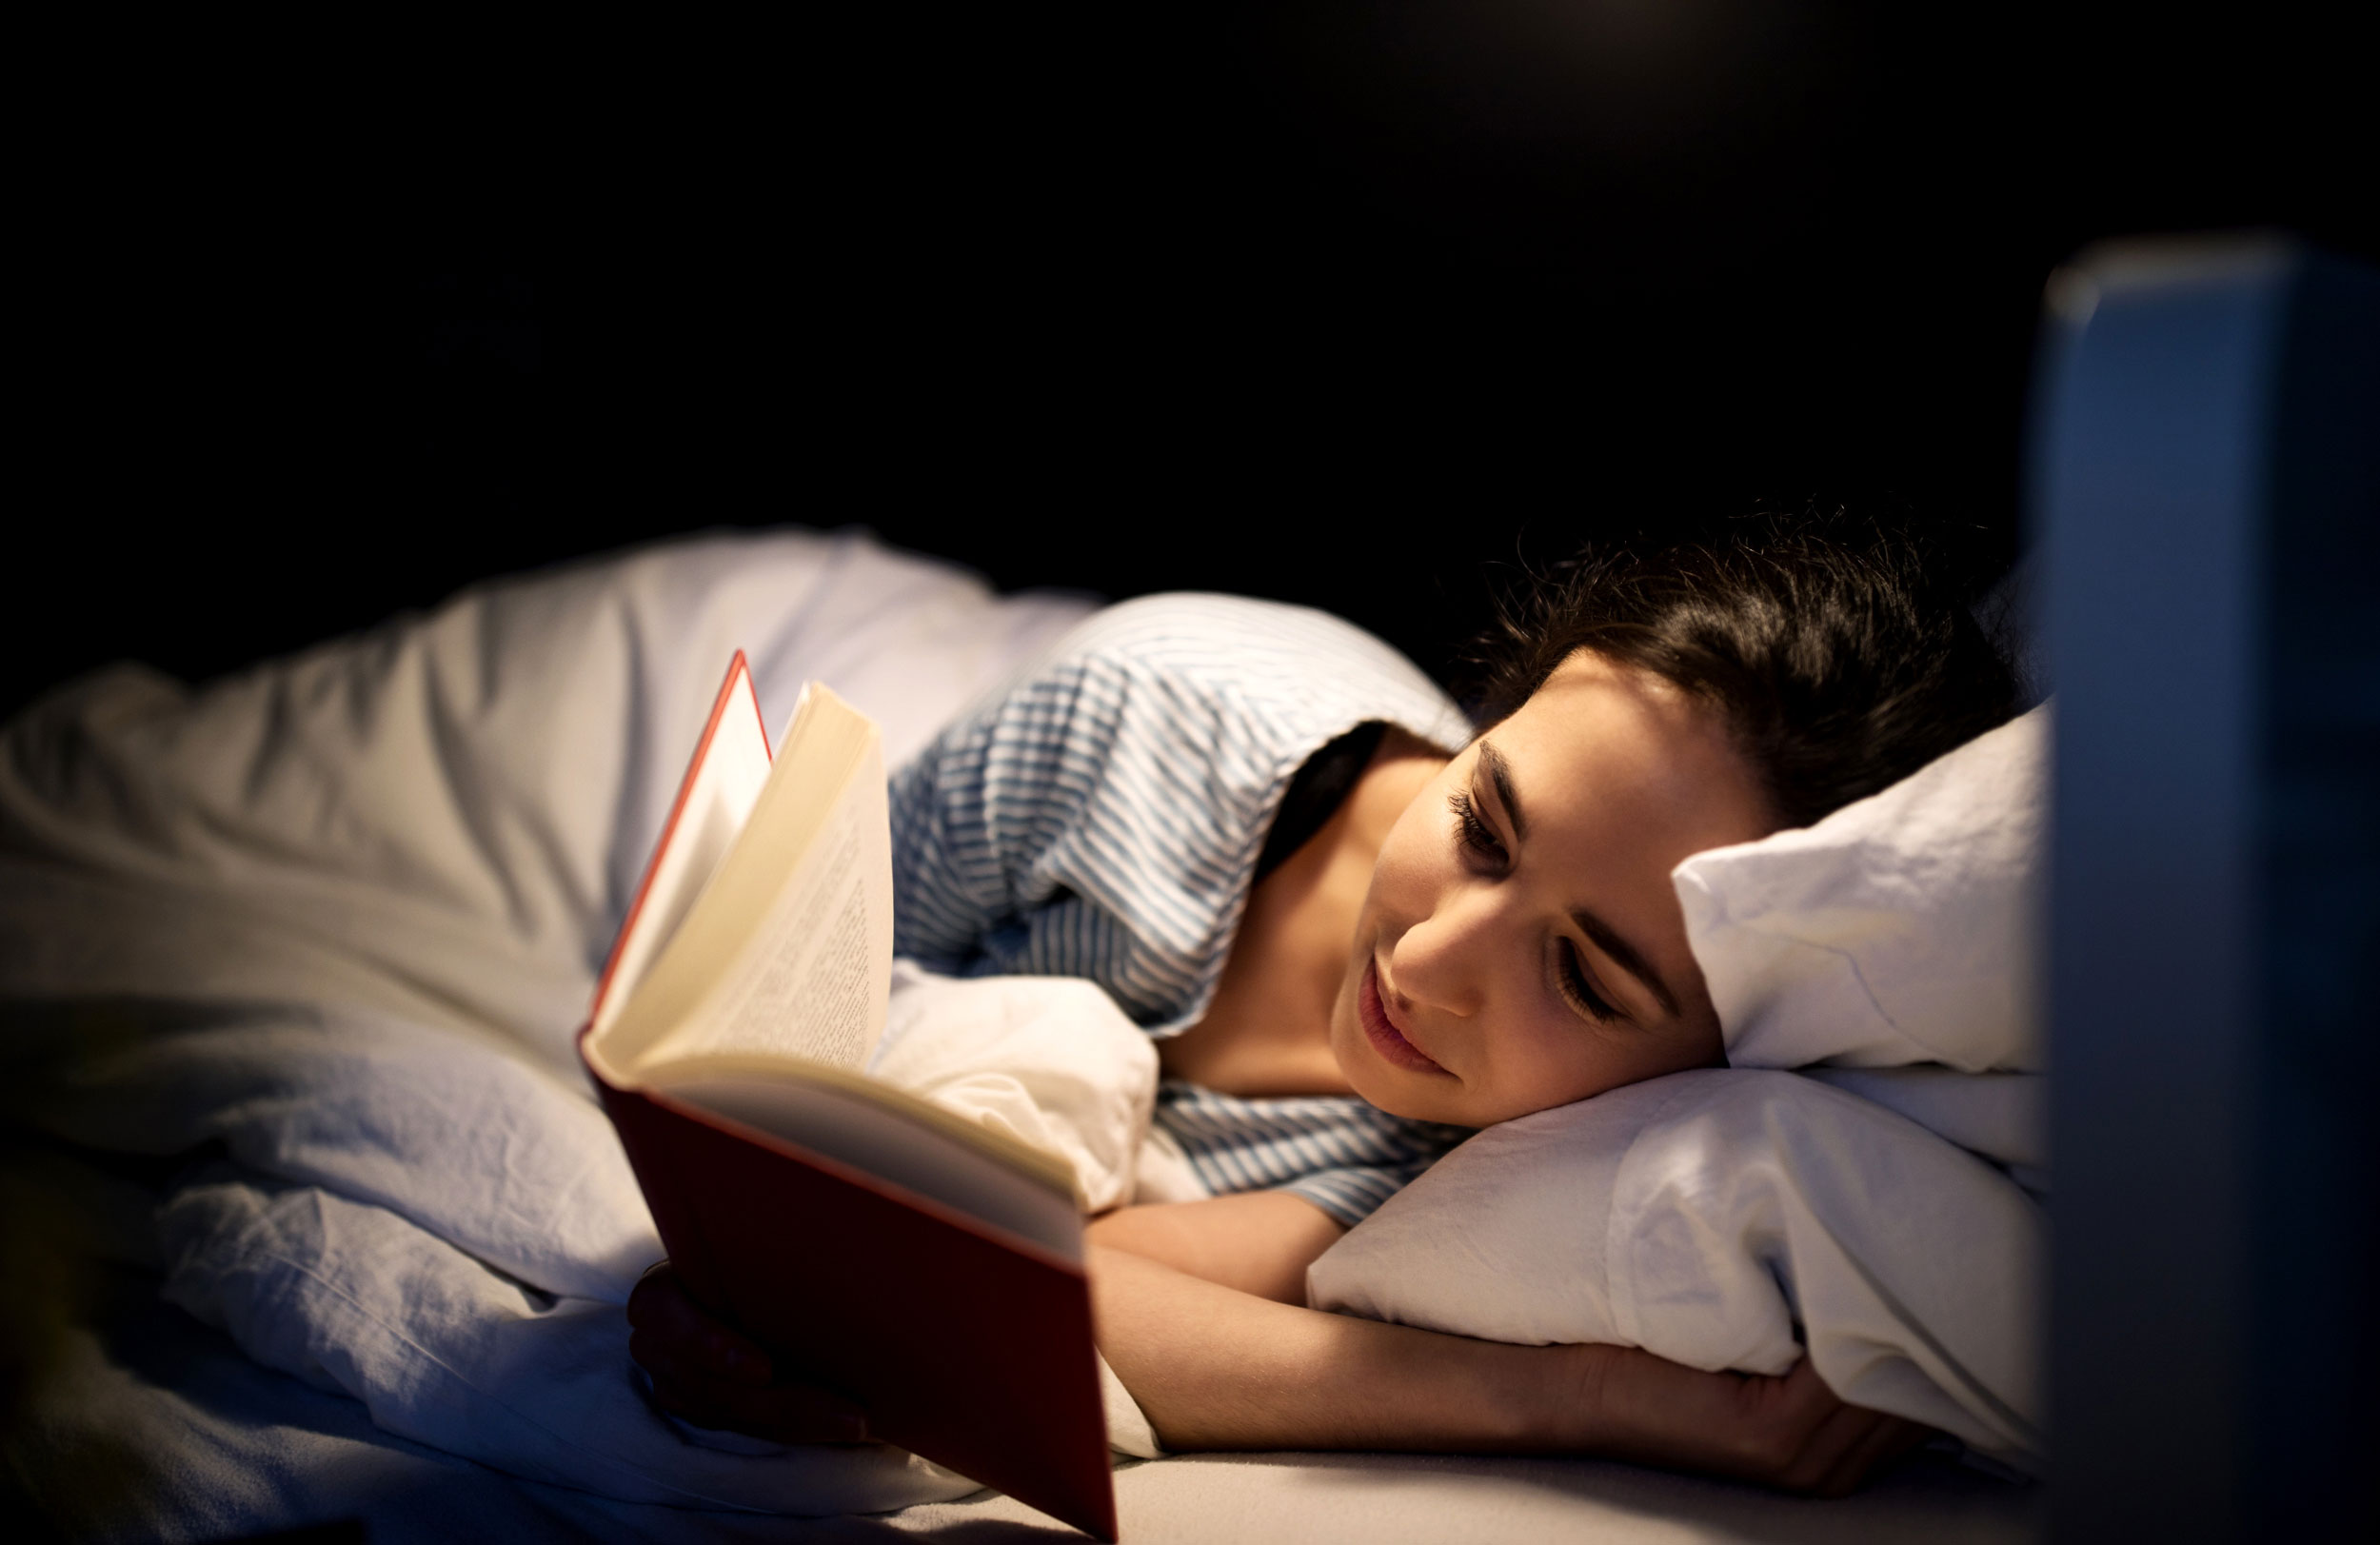 رابطه ی بین مطالعه ی کتاب و خواب سالم در افراد